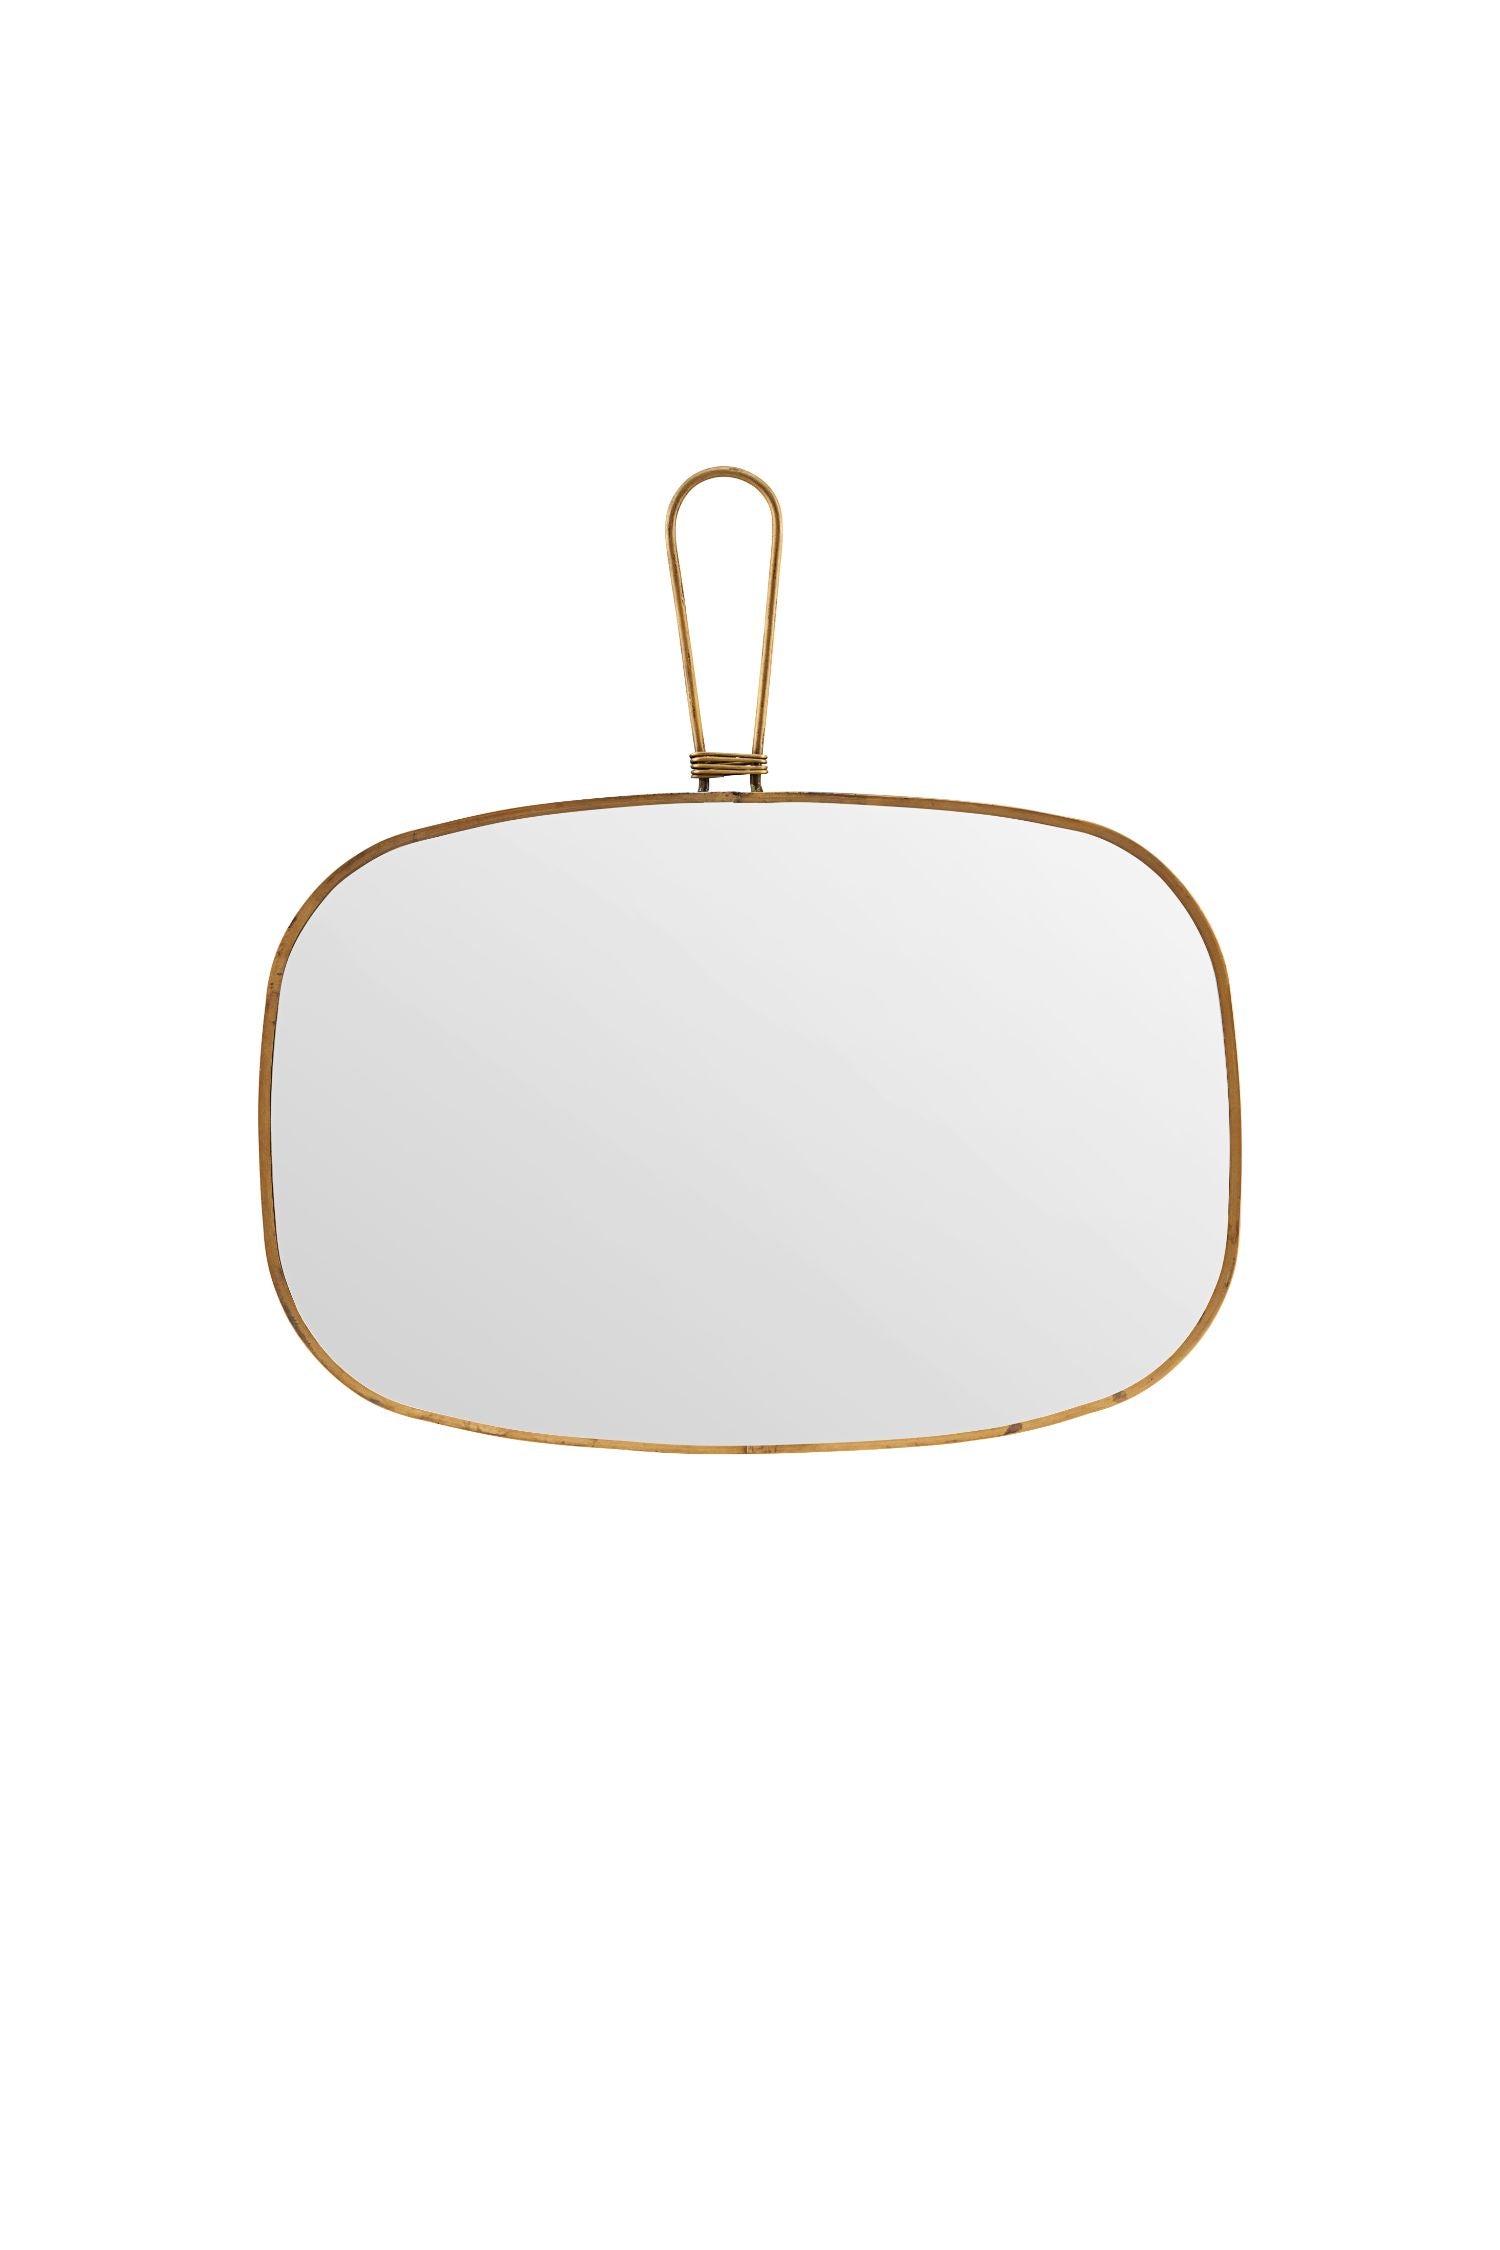 vintage brass mirror wide